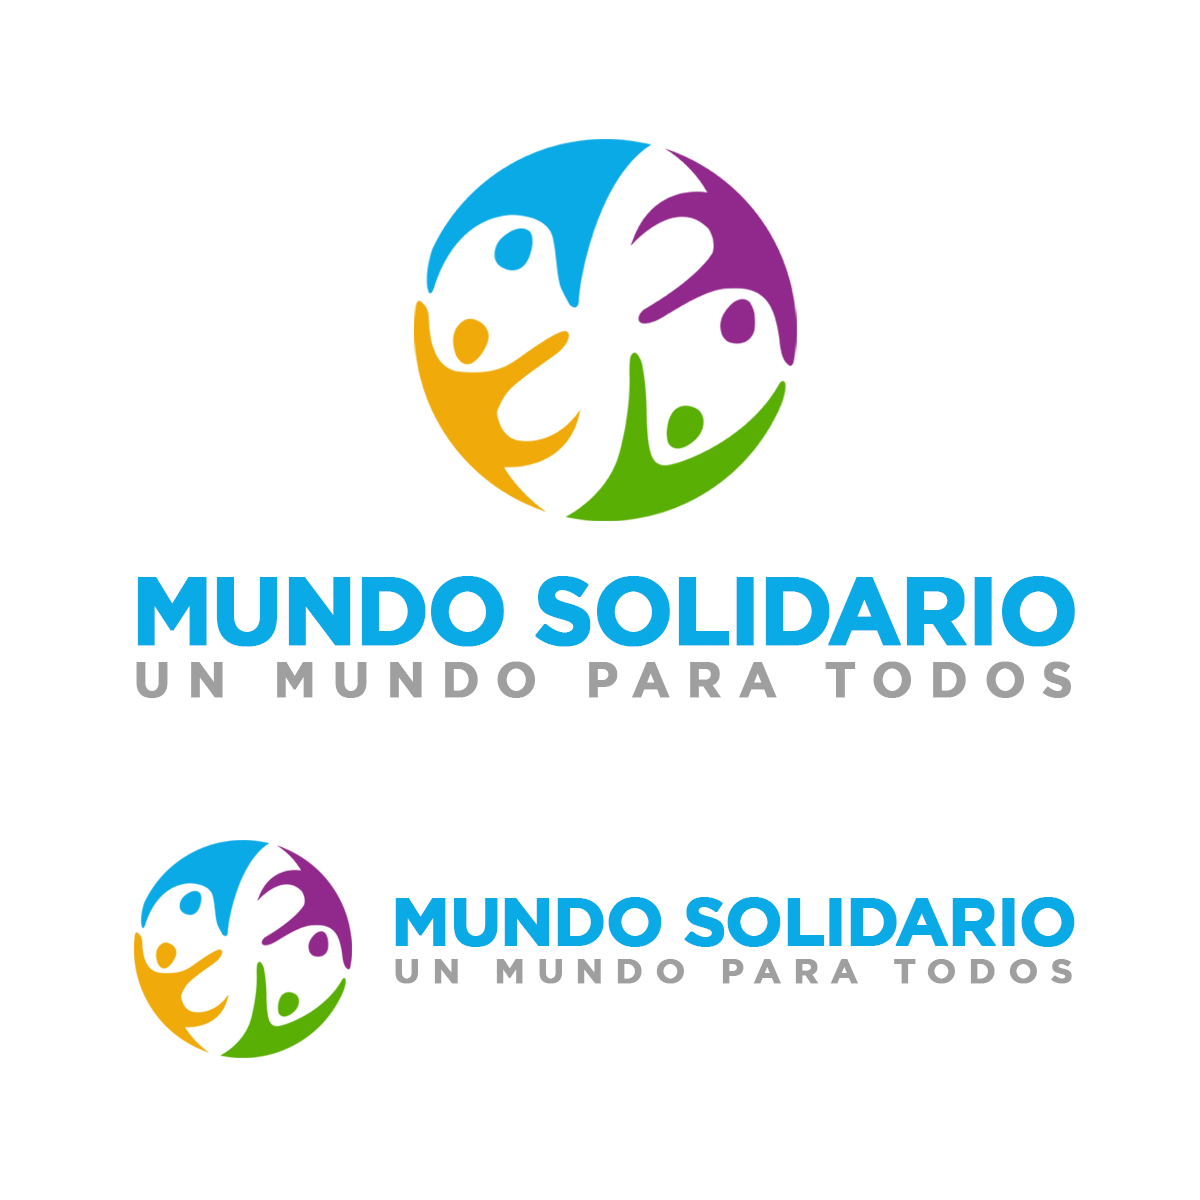 Logo Design entry 1897187 submitted by GeraltofRivia to the Logo Design for Mundo Solidario,  run by alxmalaga